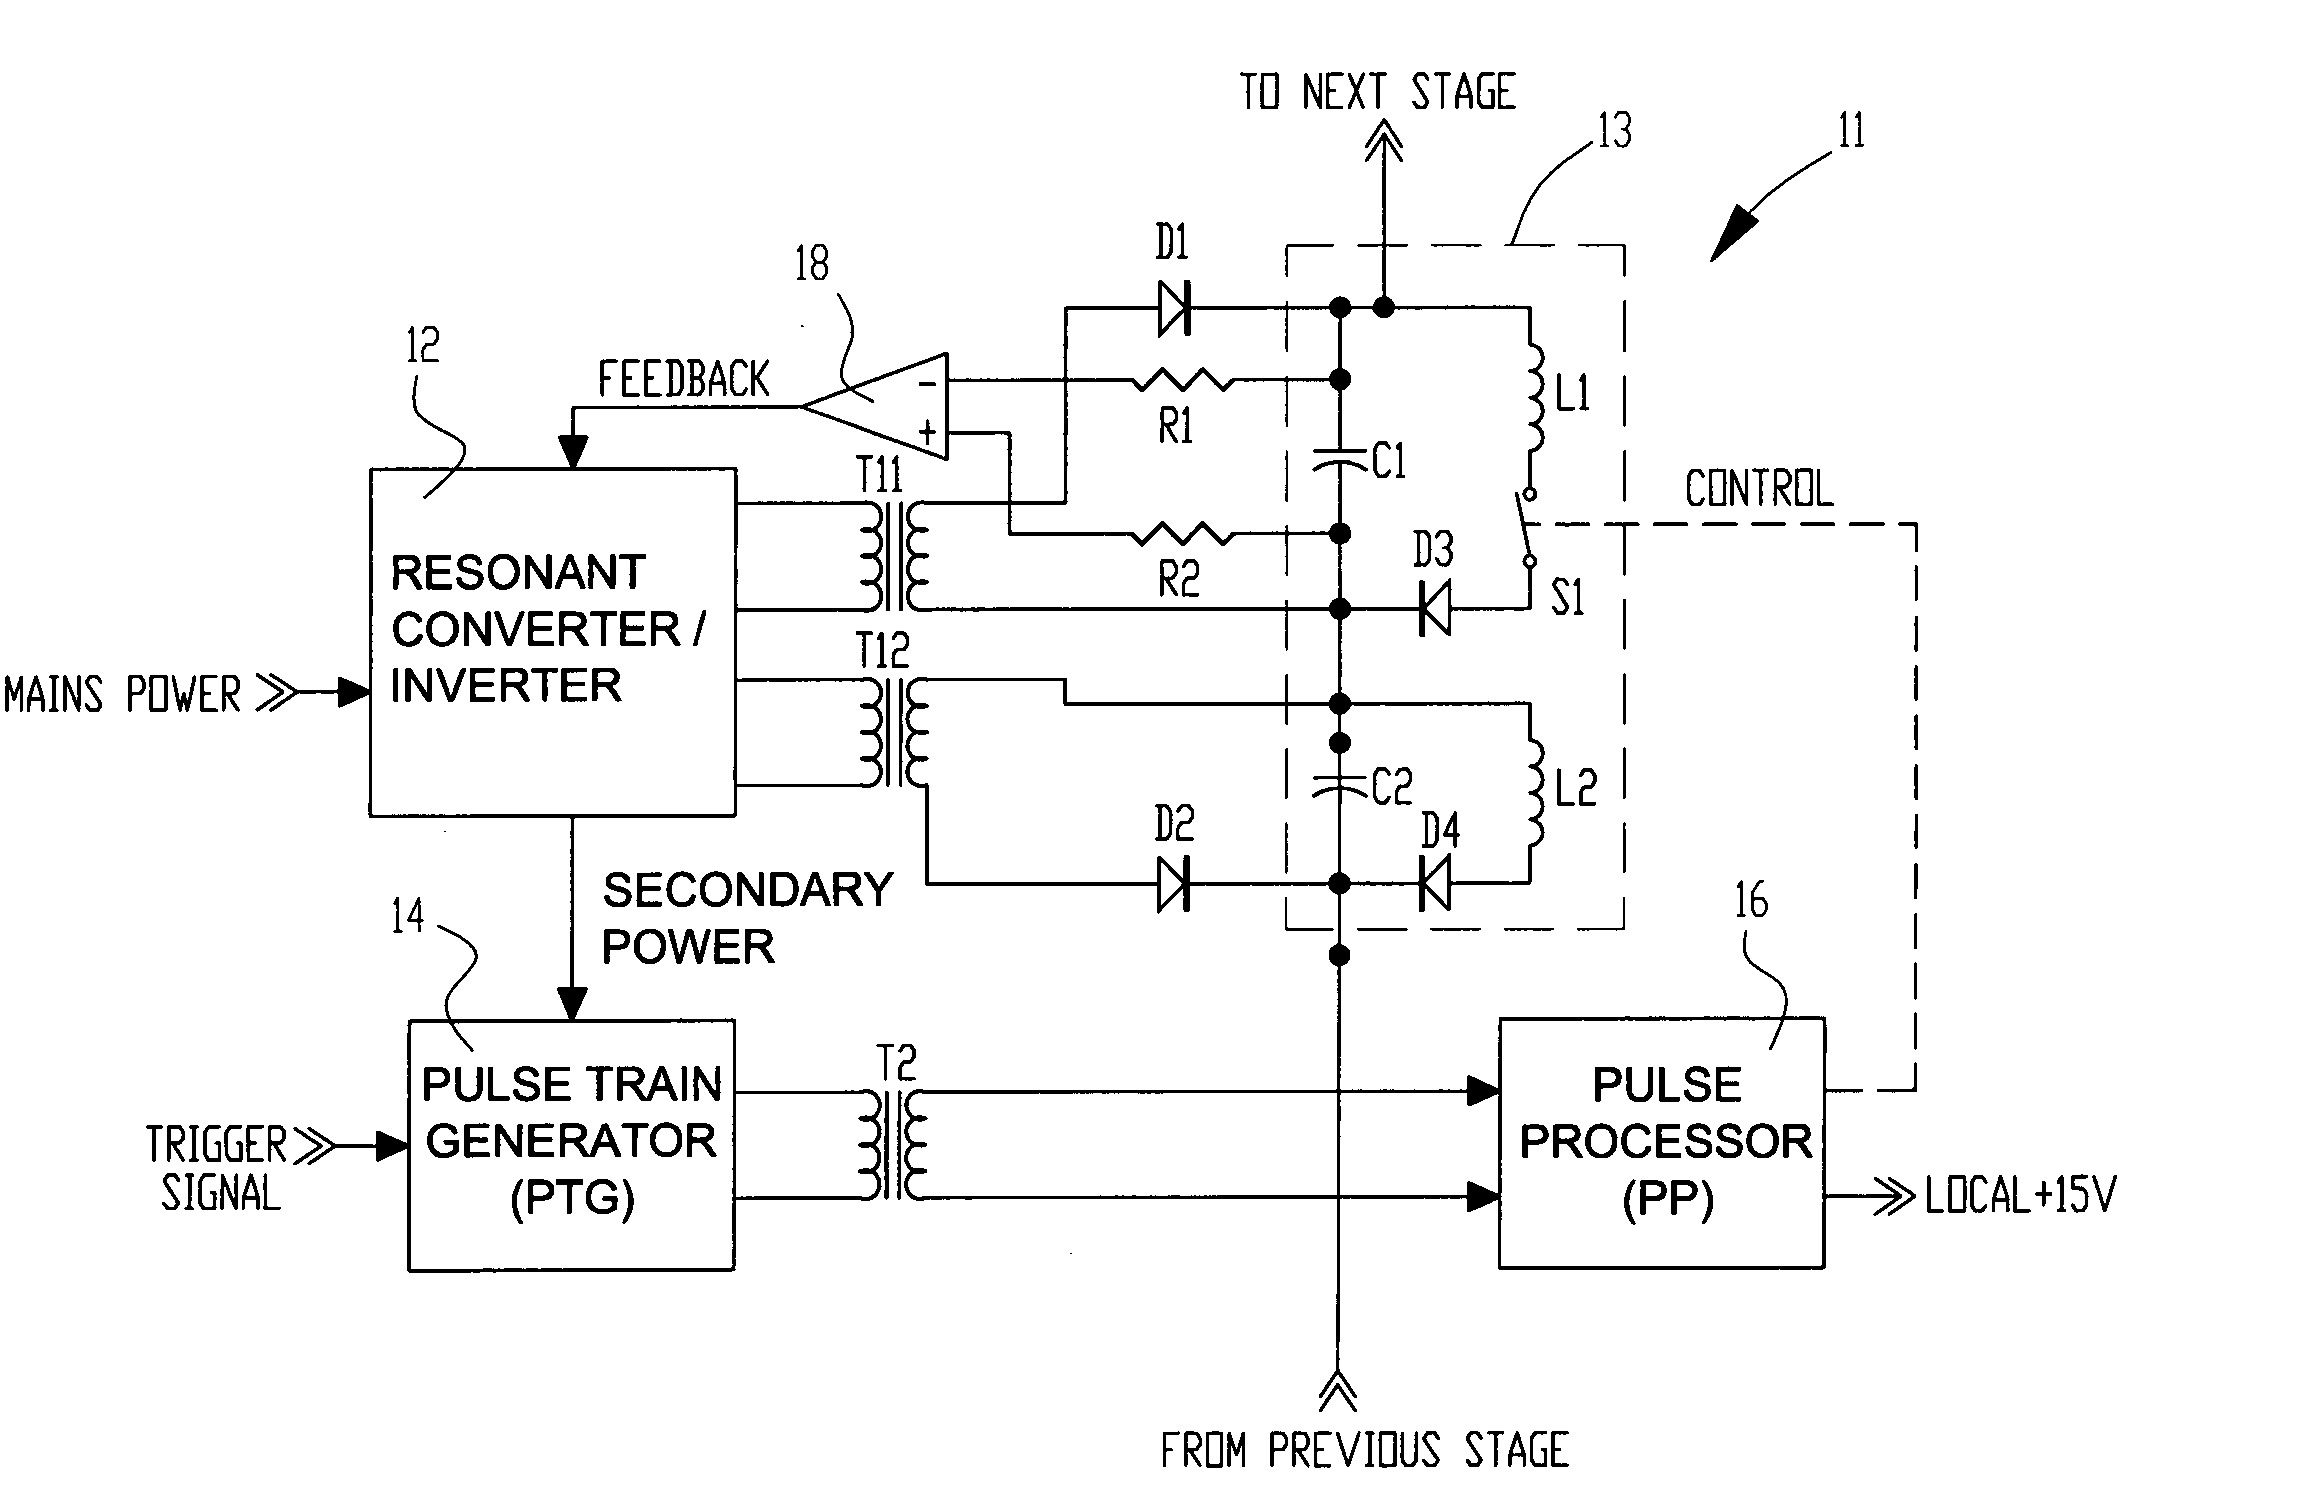 High voltage pulse generator